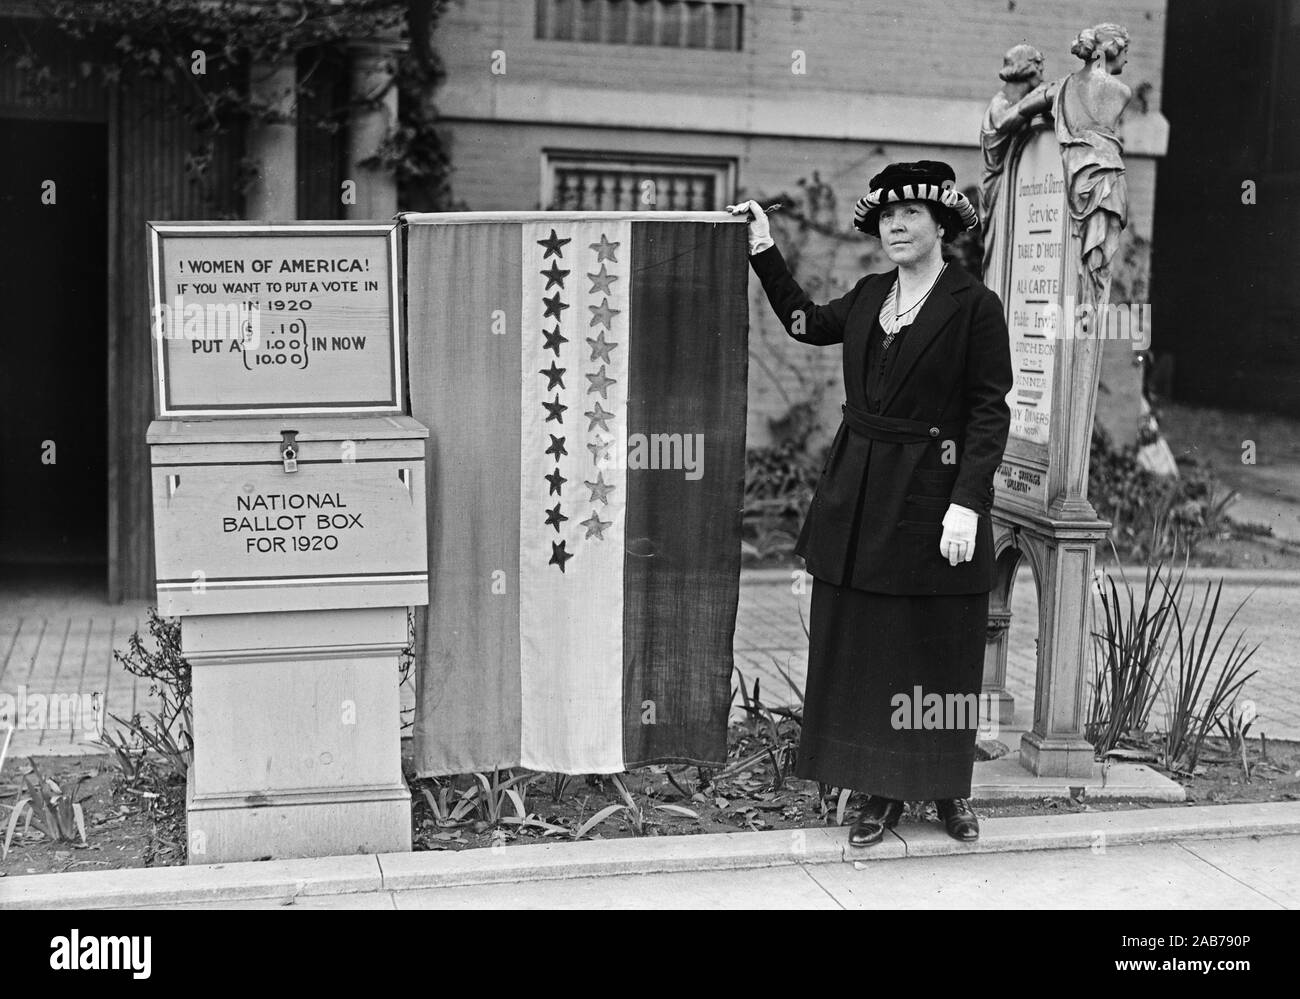 Frauen von Amerika! Wenn Sie möchten, dass eine Abstimmung im 1920 stellen ein (.10, 13.00, 10.00). Nationale Wahlurne für 1920 Ca. 1920 (Frauenwahlrecht) Stockfoto